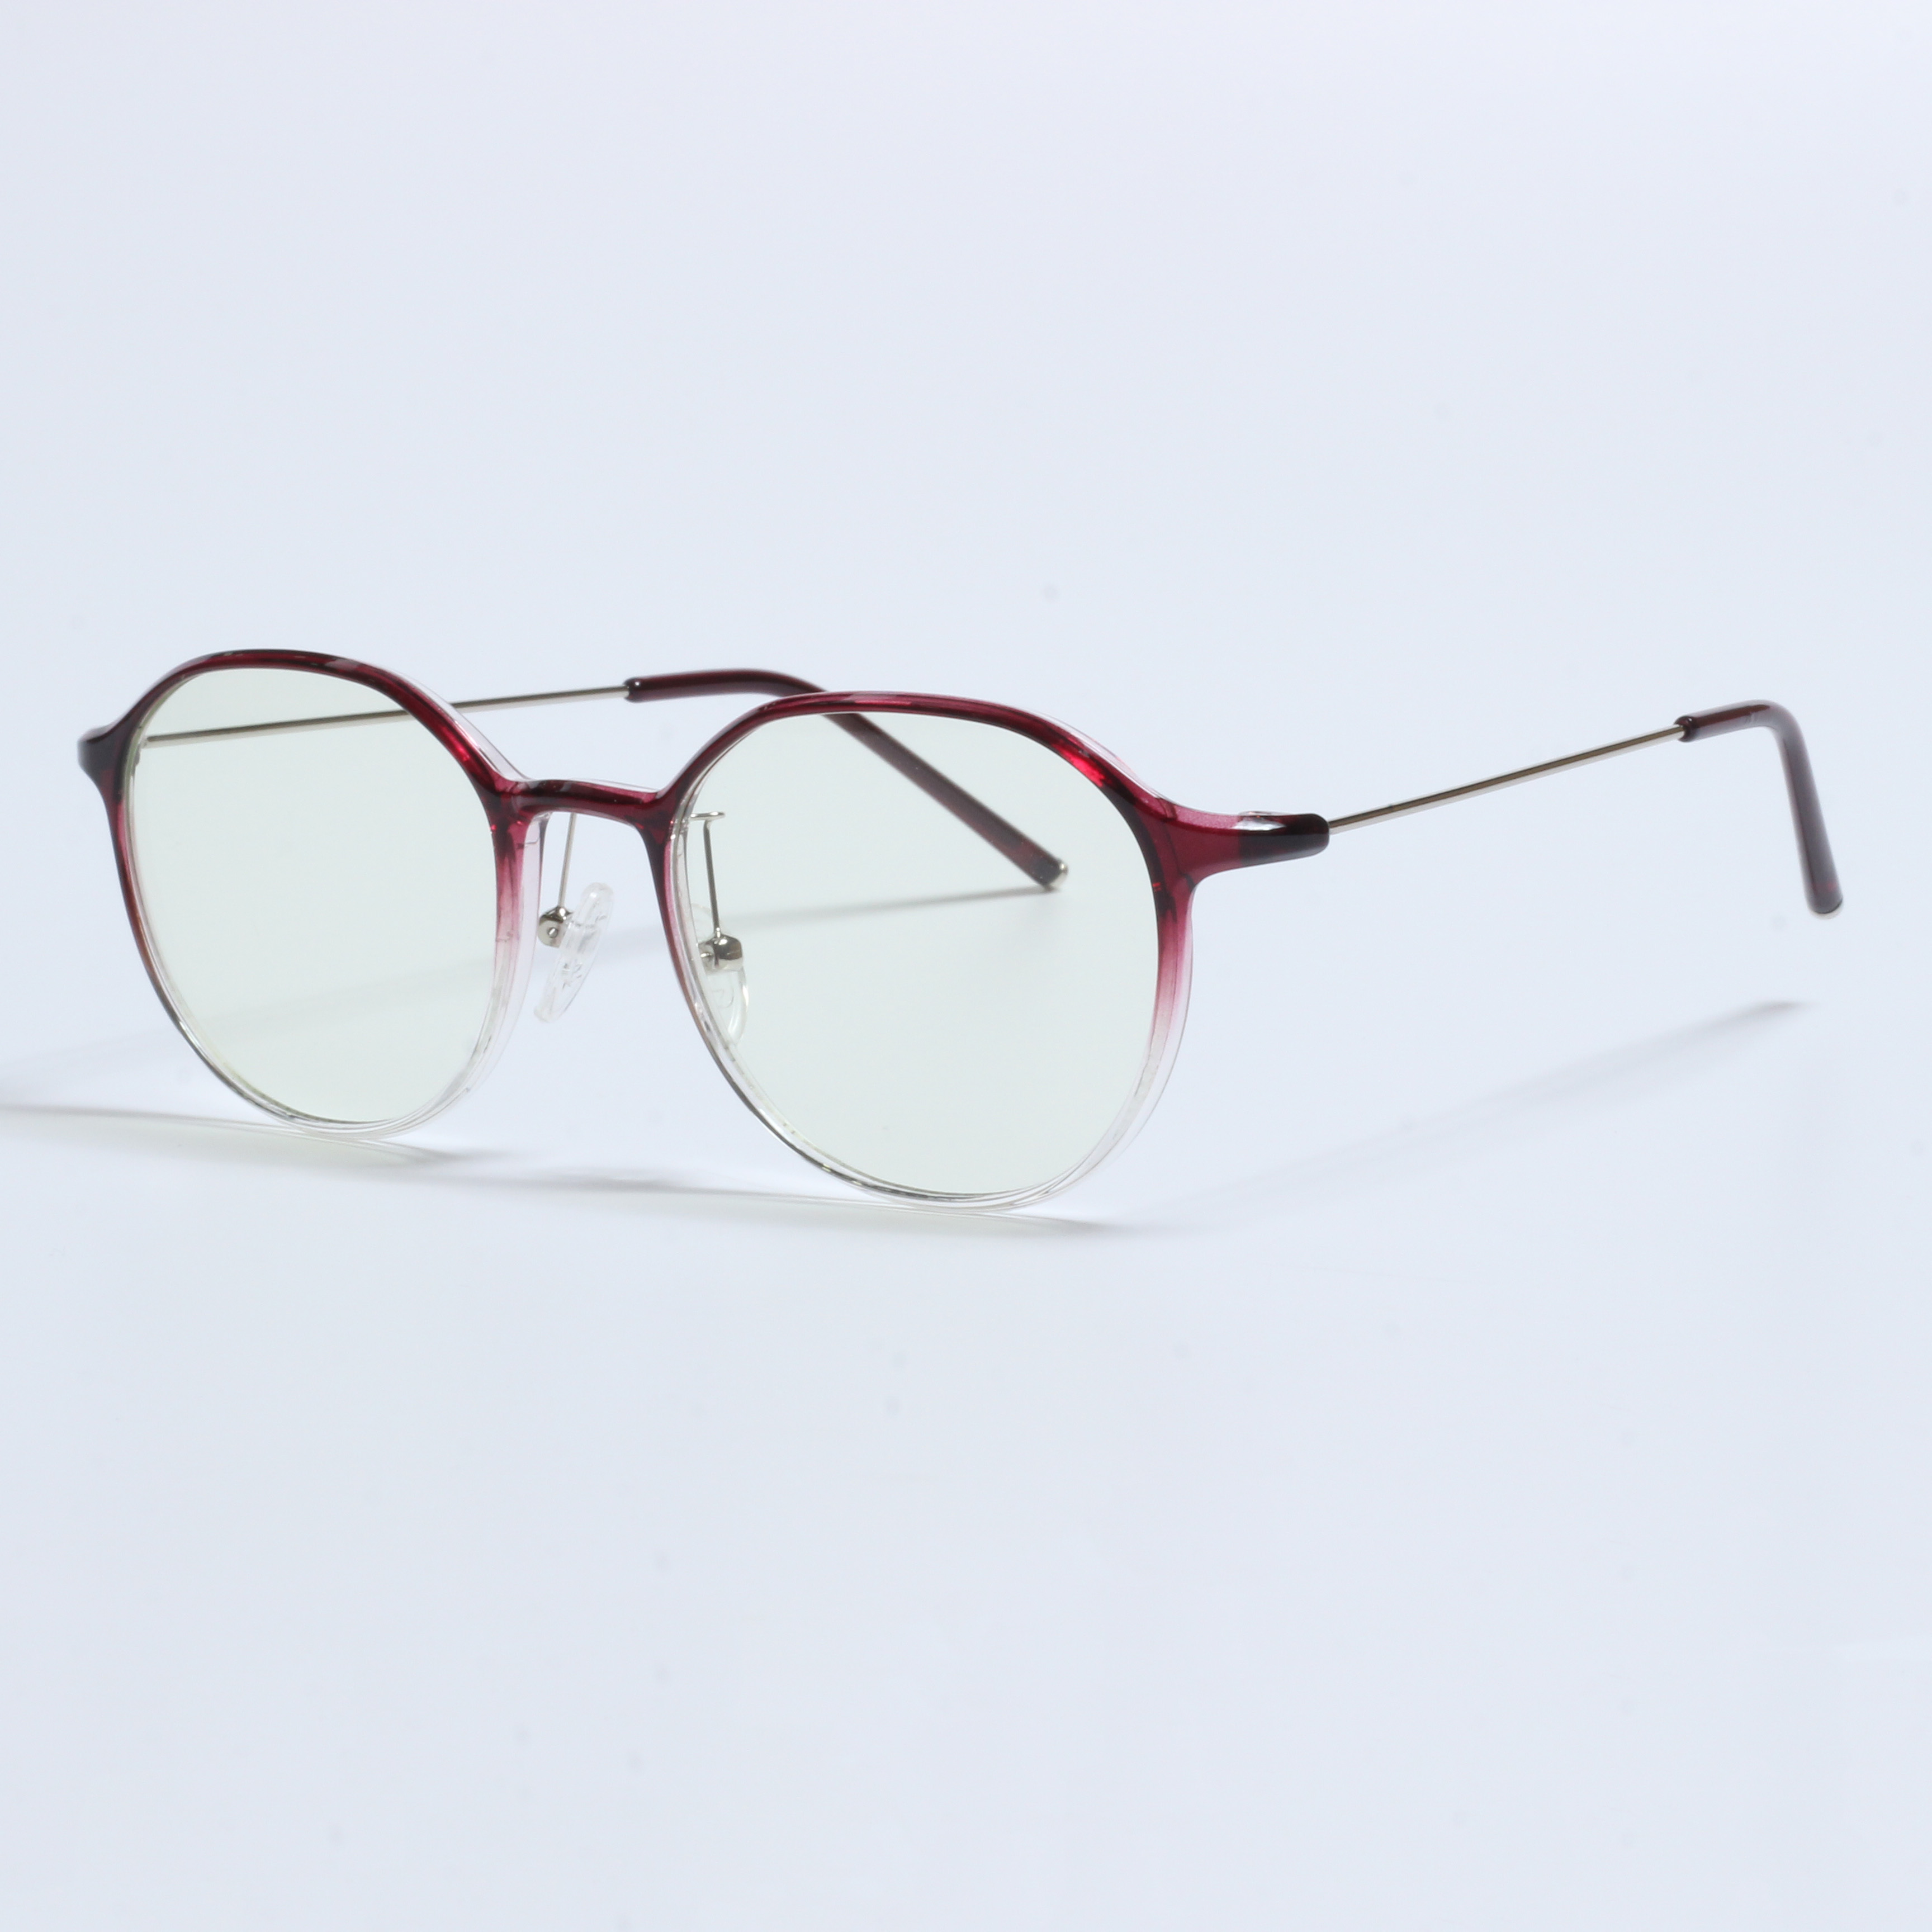 Vintage dikke Gafas Opticas De Hombres transparante TR90-frames (11)